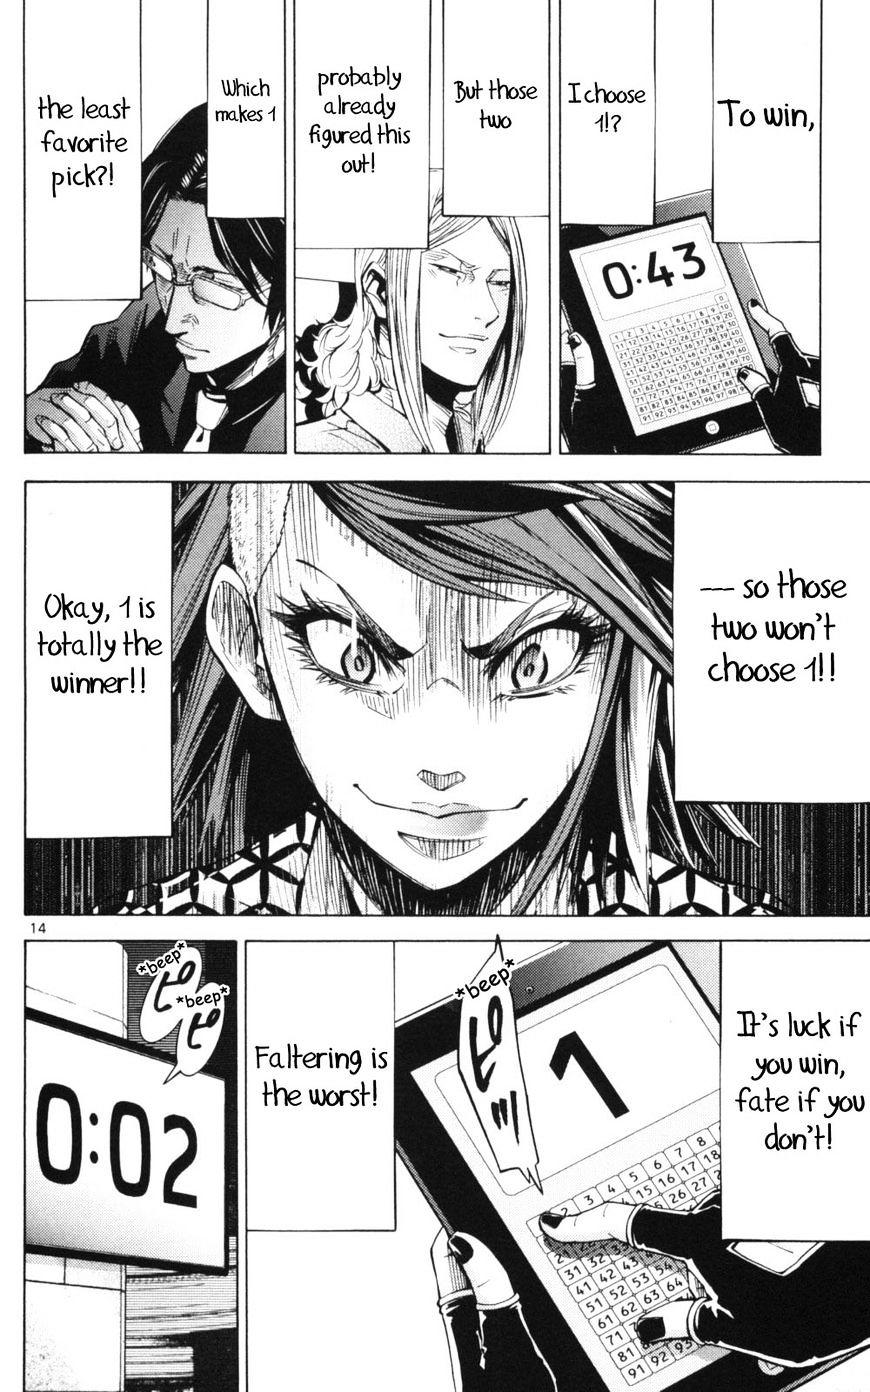 Imawa No Kuni No Alice Chapter 51.3 : Side Story 6 - King Of Diamonds (3) page 14 - Mangakakalot